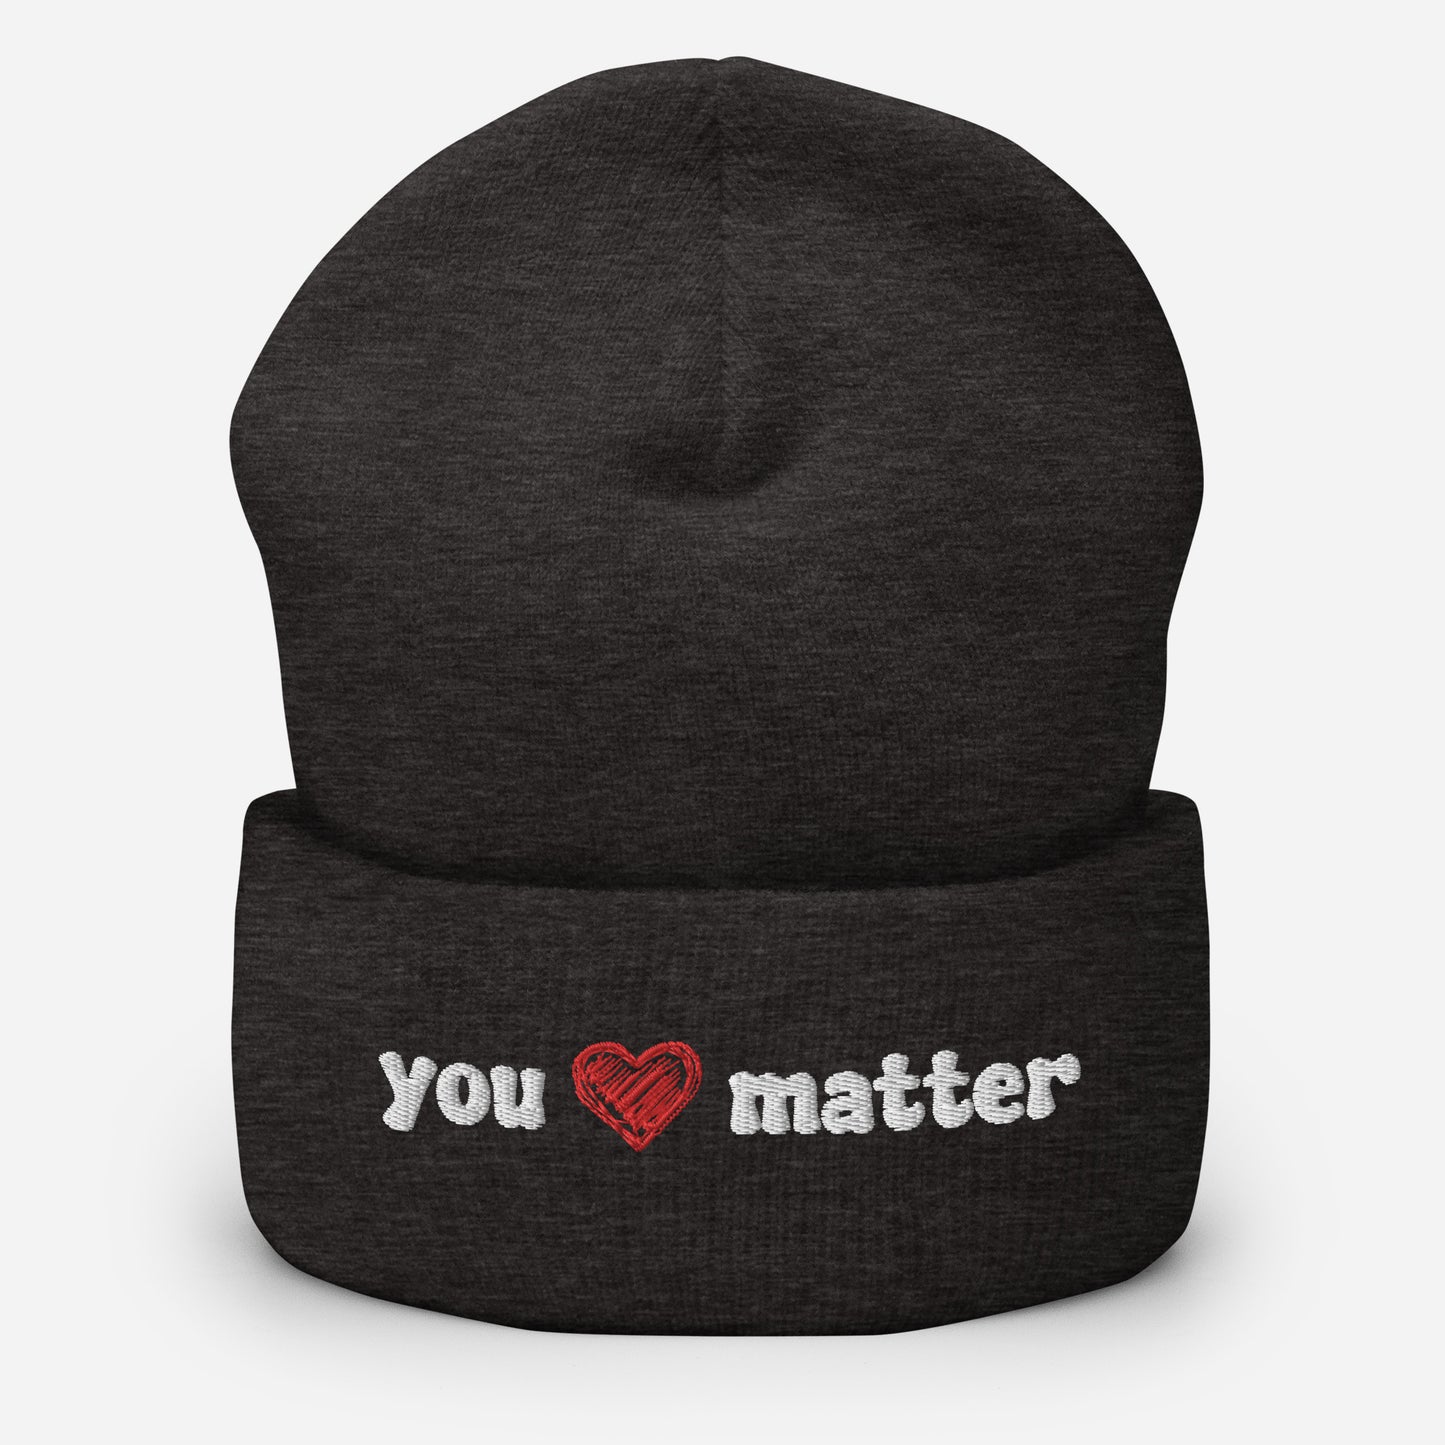 "You Matter" Cuffed Beanie